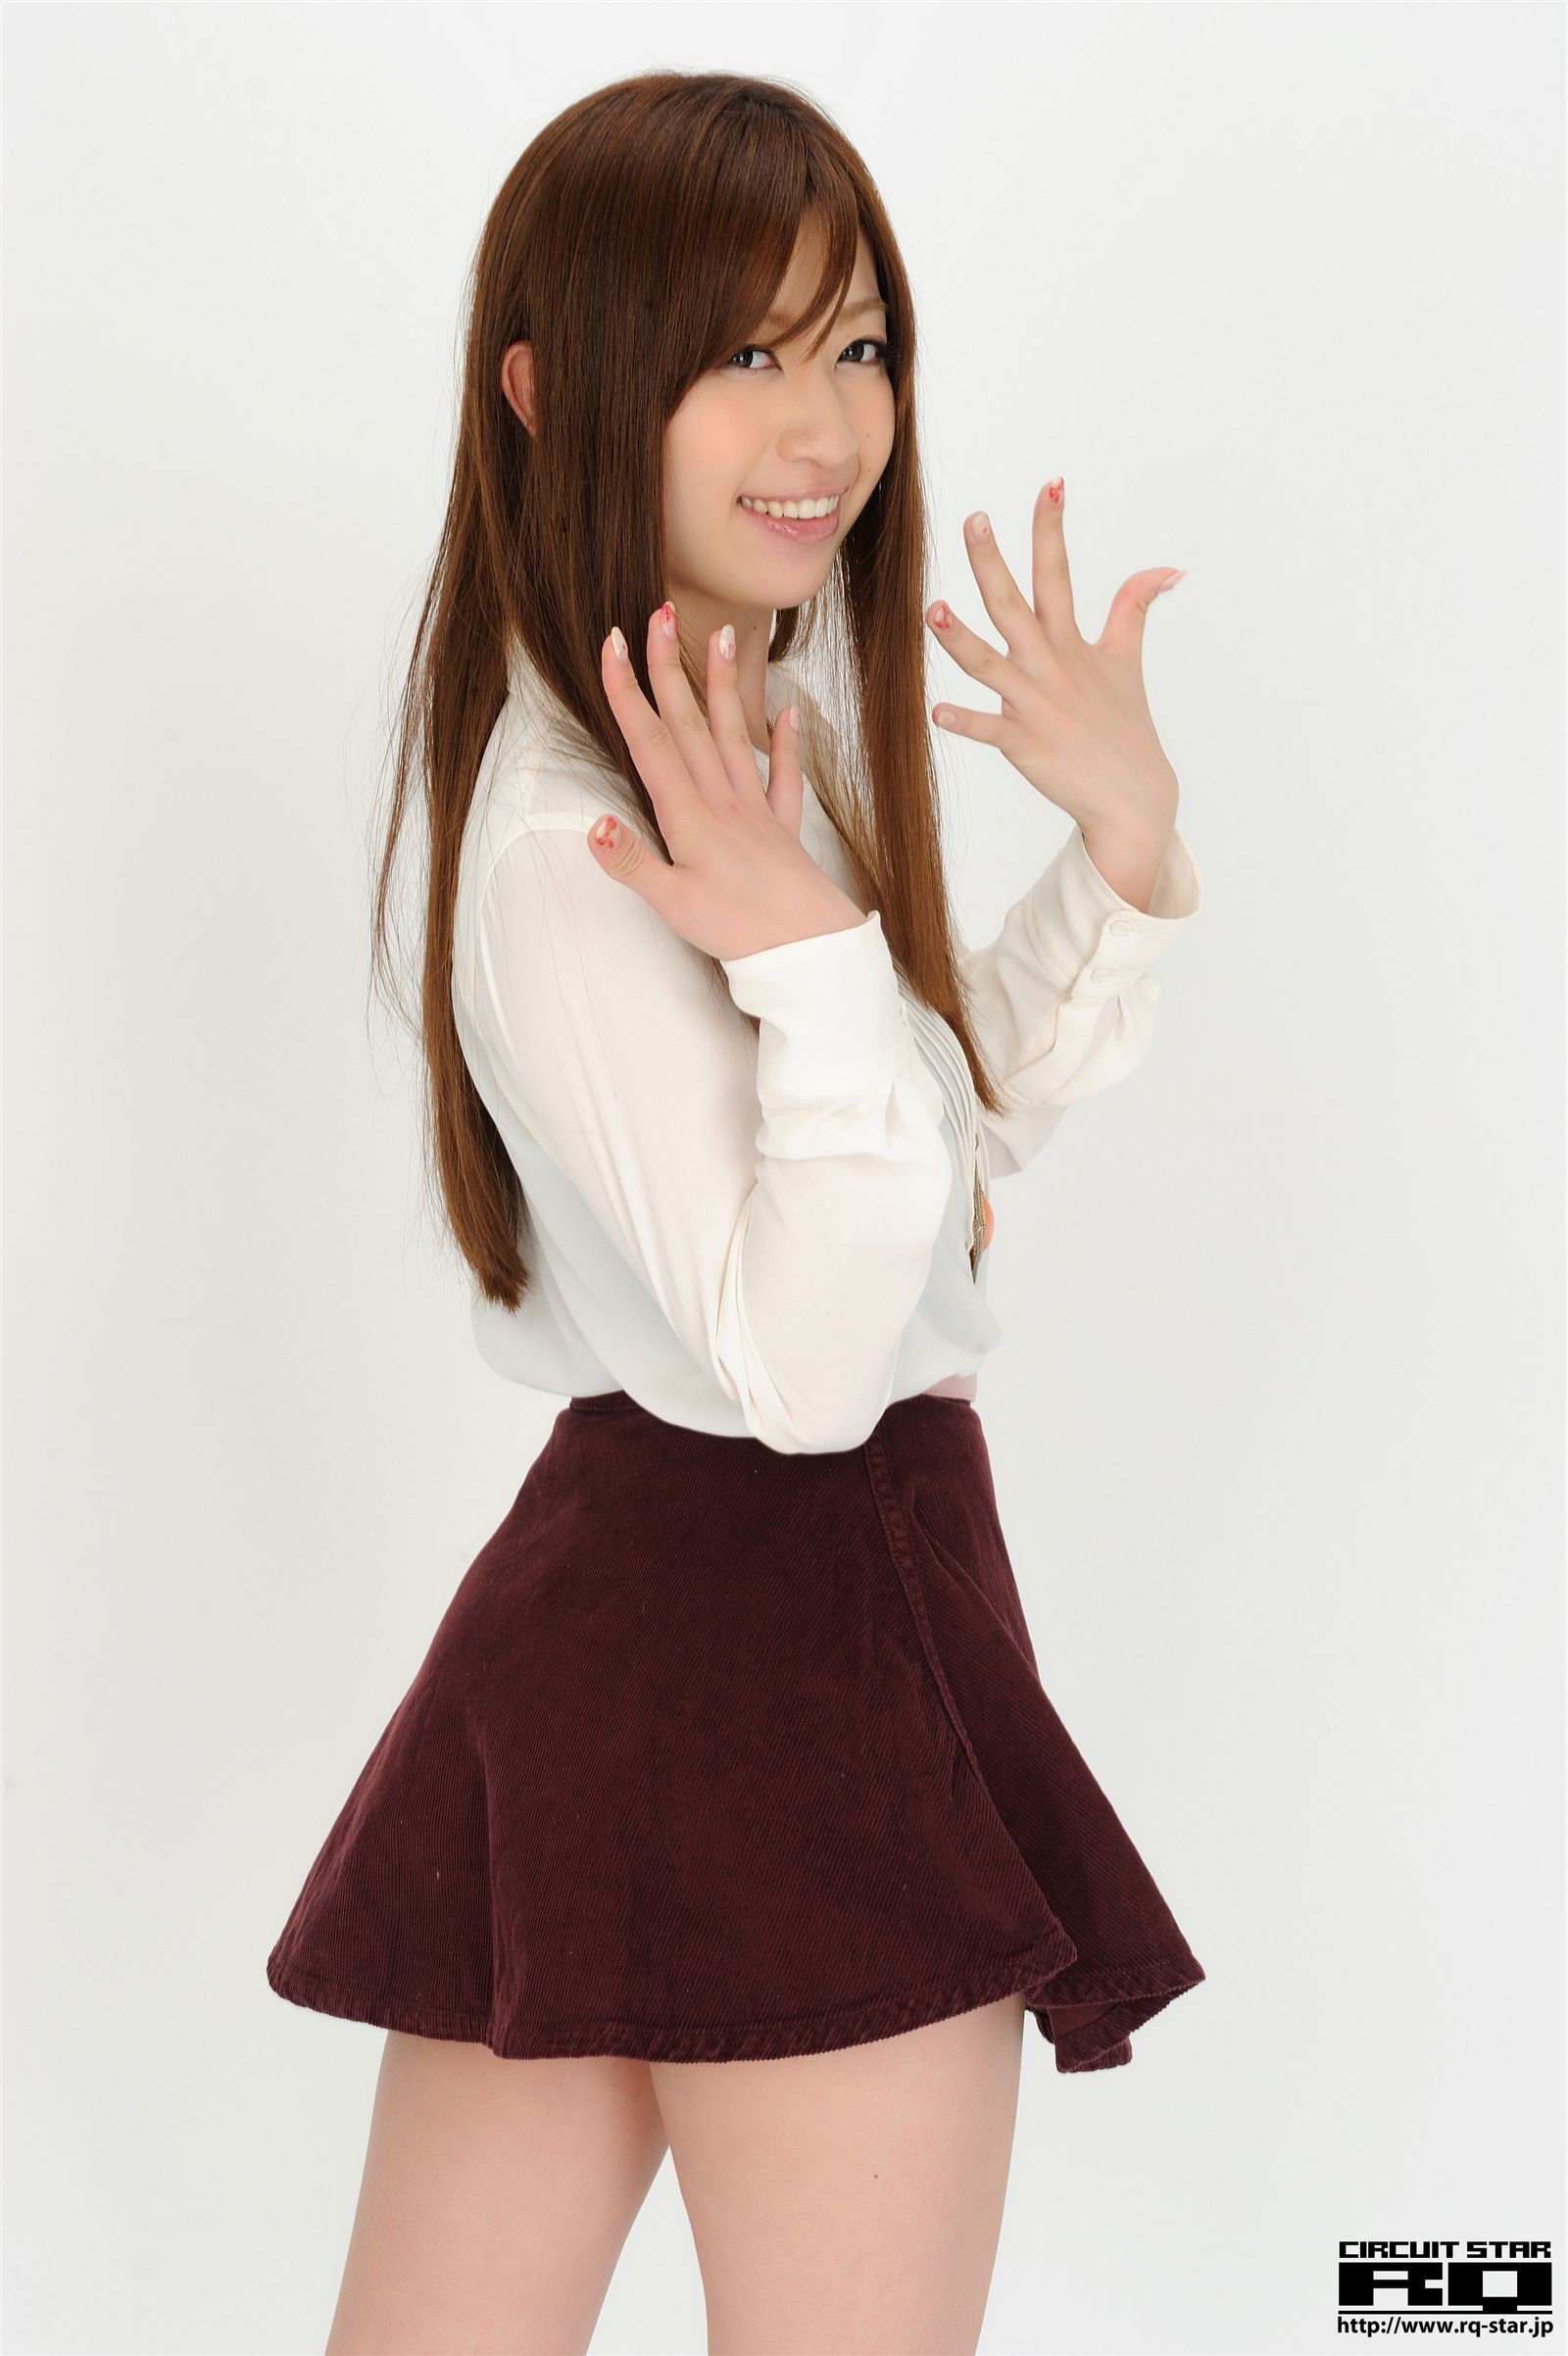 中條明香 Rq-star 04-11 No.00622 日本高清制服美女图片